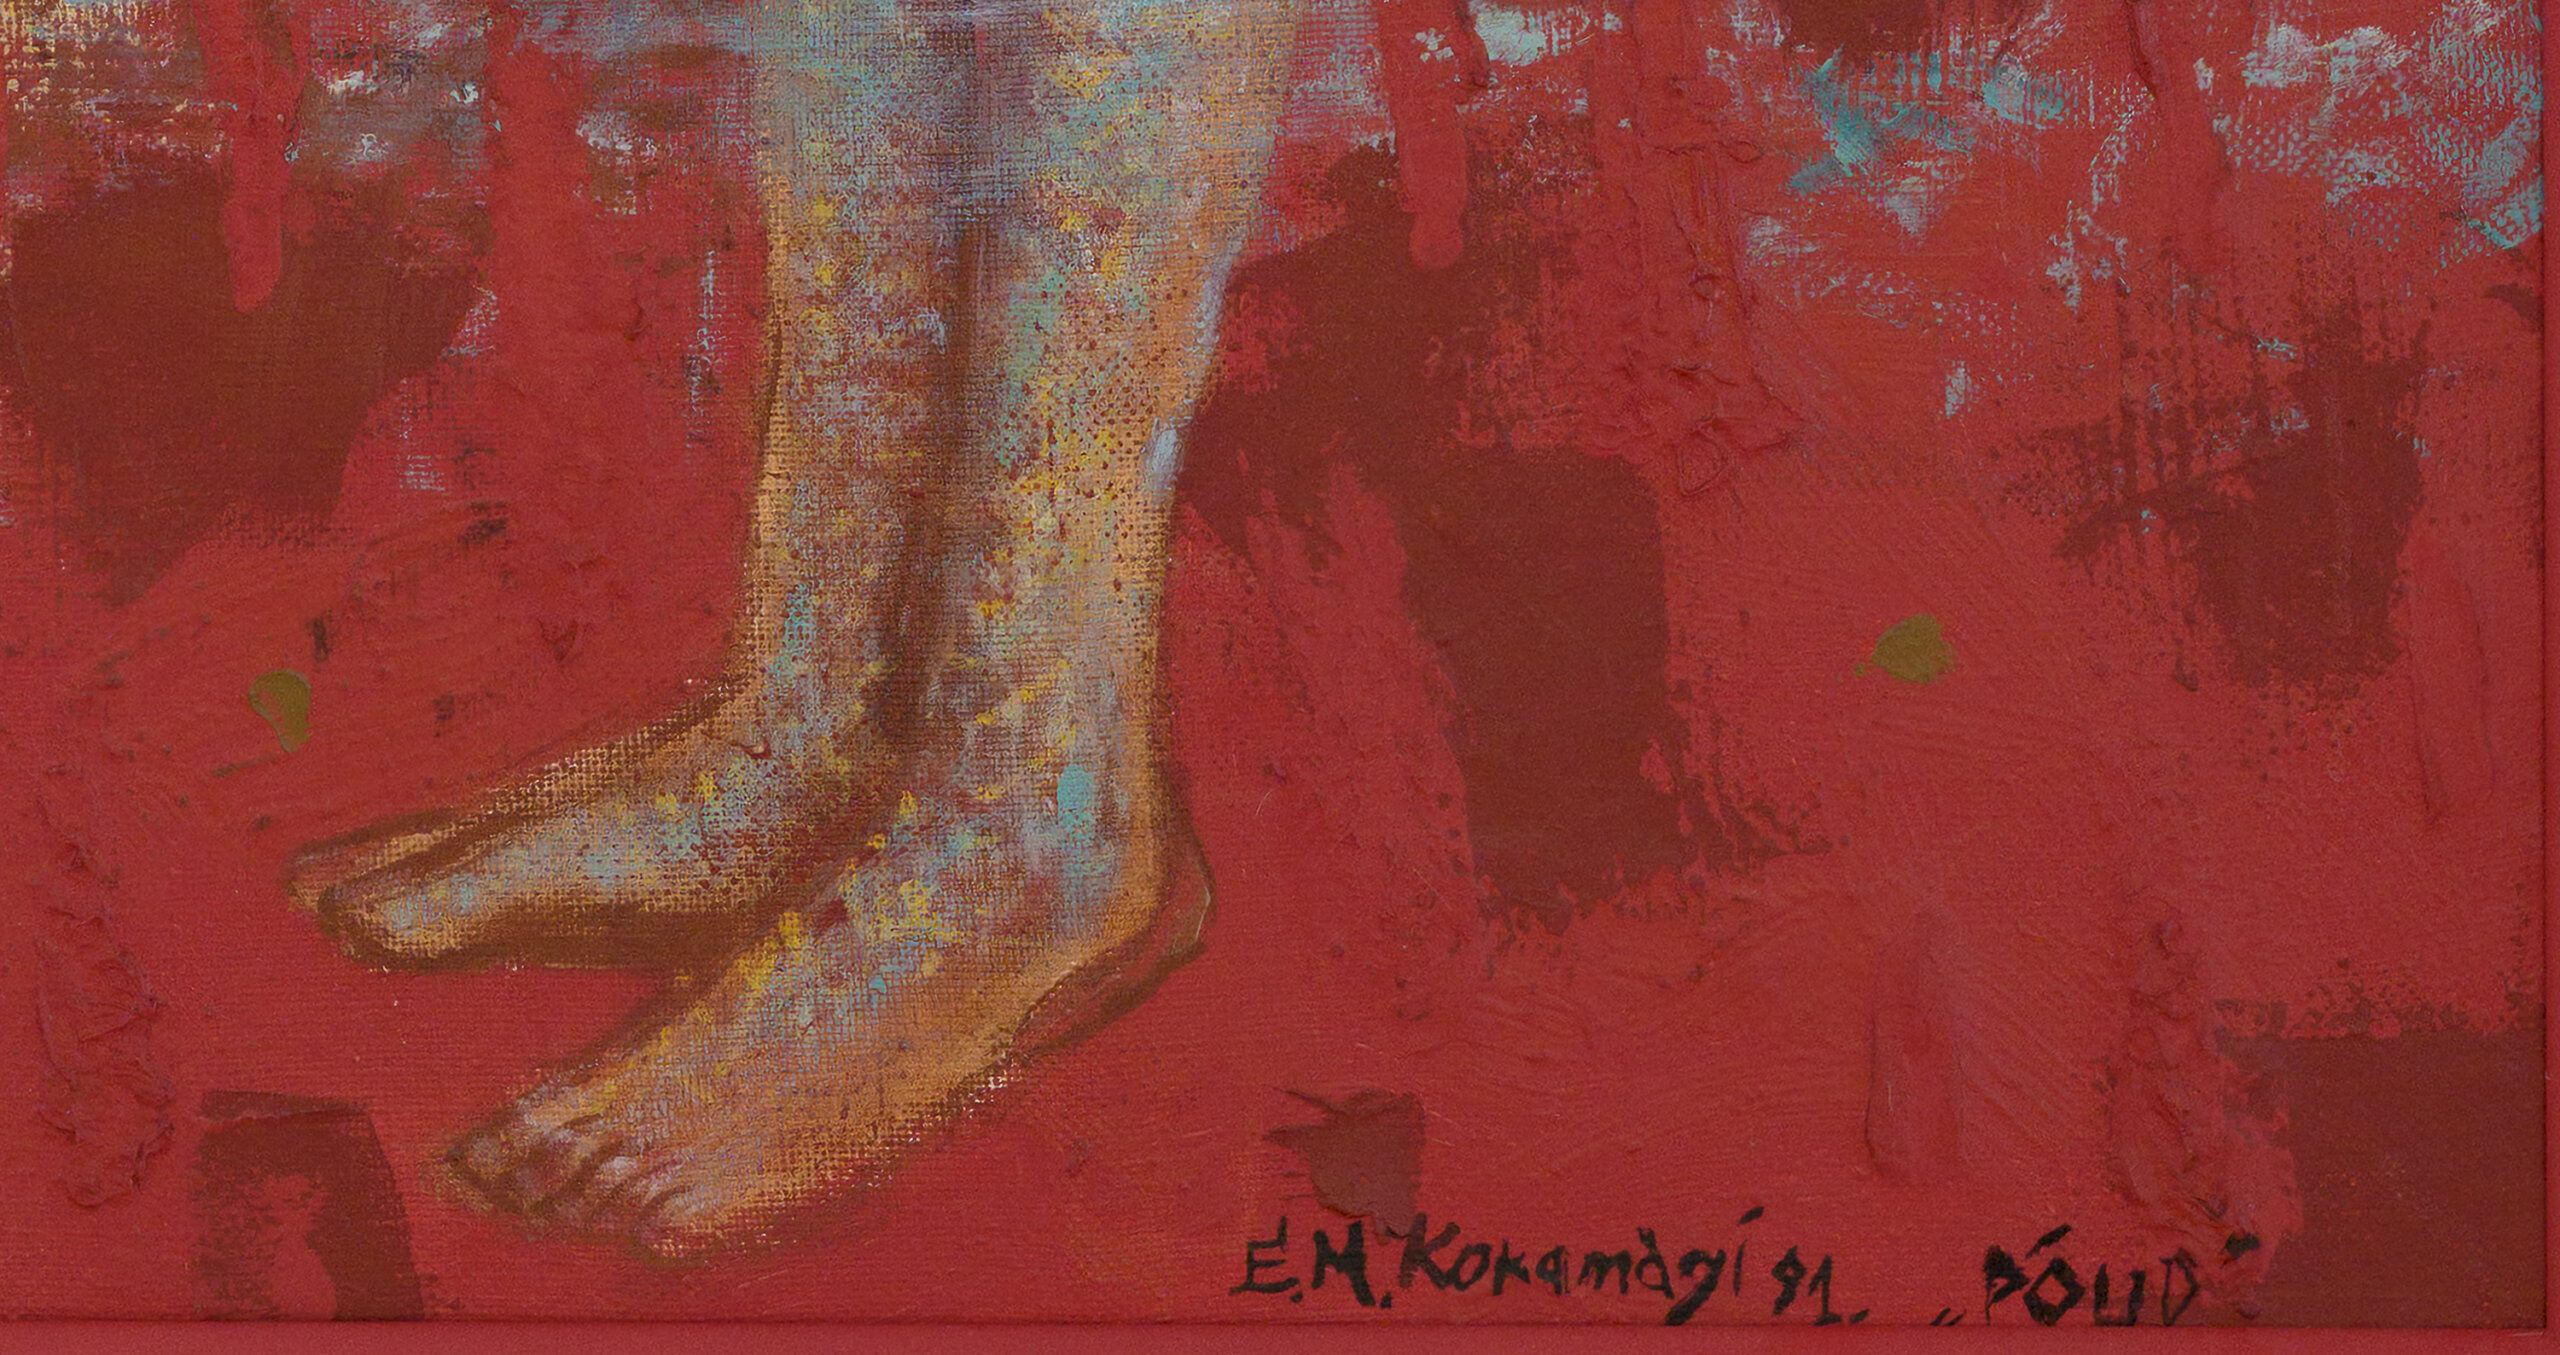 Epp Maria Kokamägi “Põud”, 1991. 130 x 130 cm.